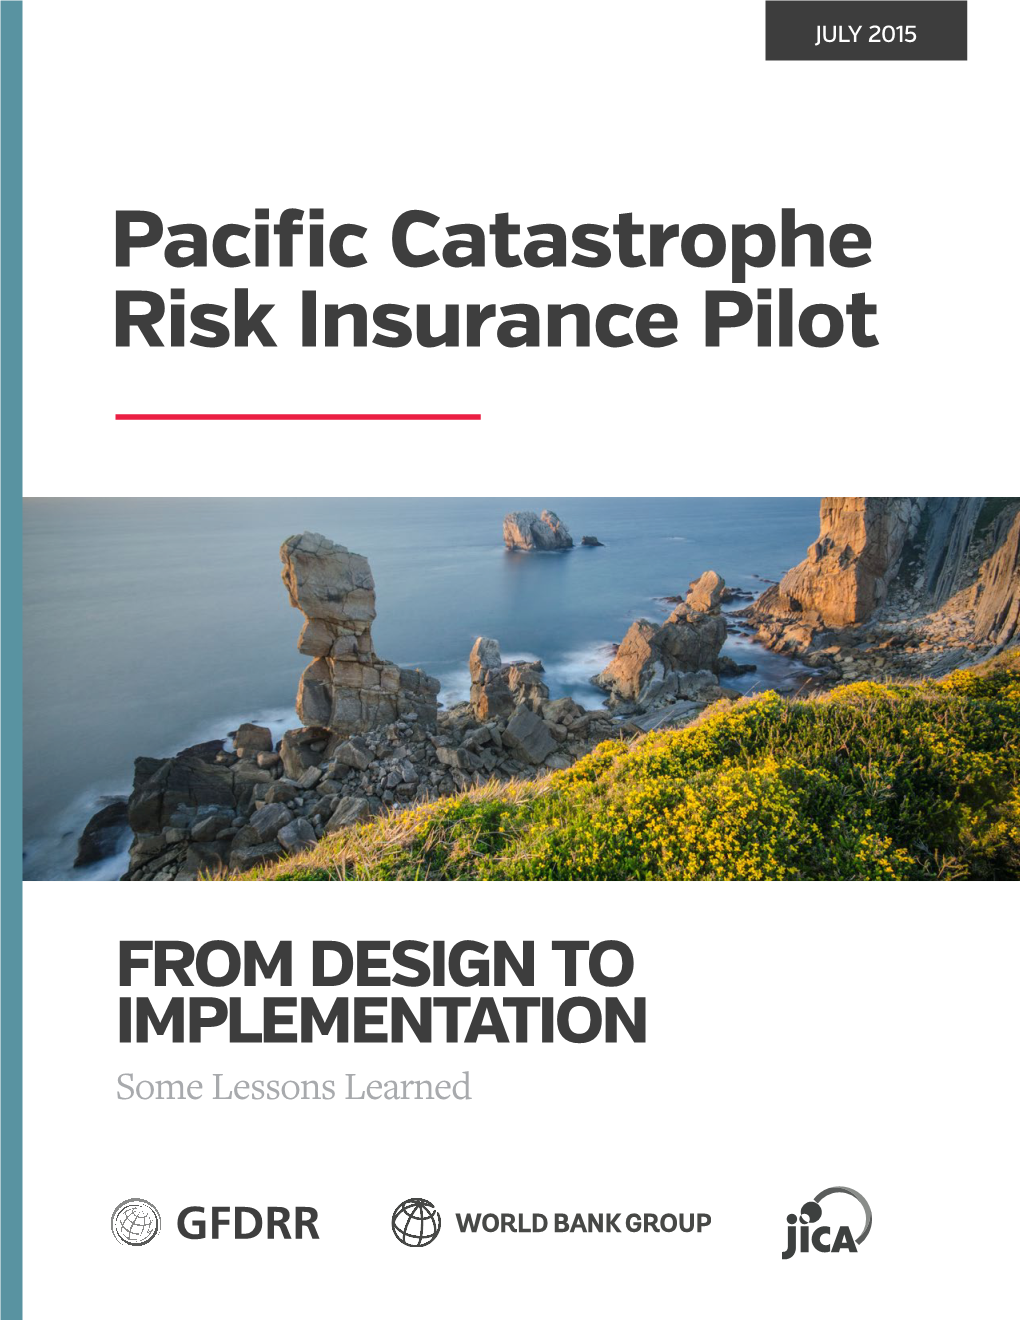 Pacific Catastrophe Risk Insurance Pilot